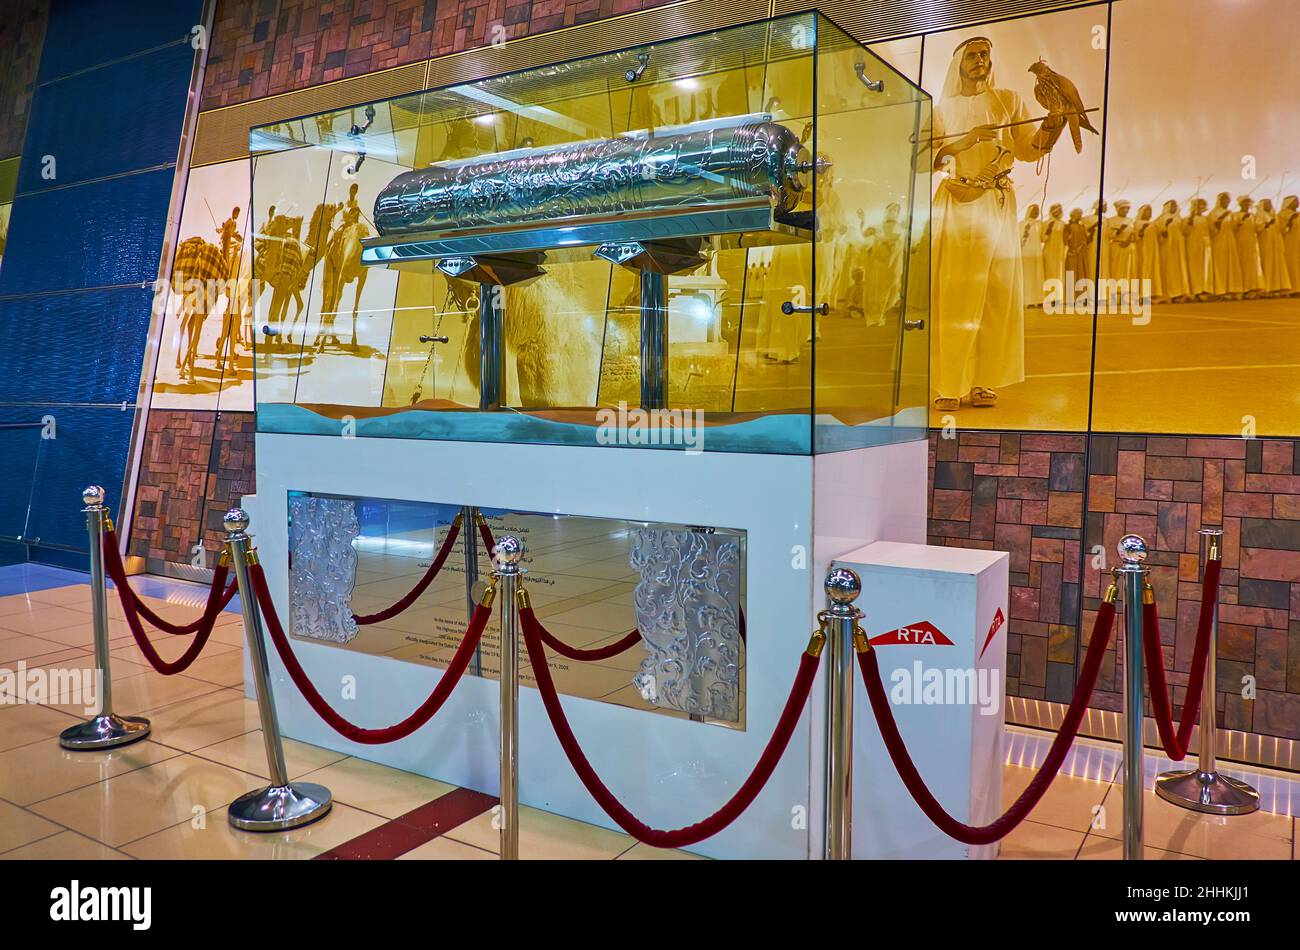 DUBAÏ, Émirats Arabes Unis - 7 MARS 2020 : le Pavillon de la station de métro Union est décoré d'une Time Capsule et d'une photo des hommes arabes en tenue traditionnelle avec falc Banque D'Images